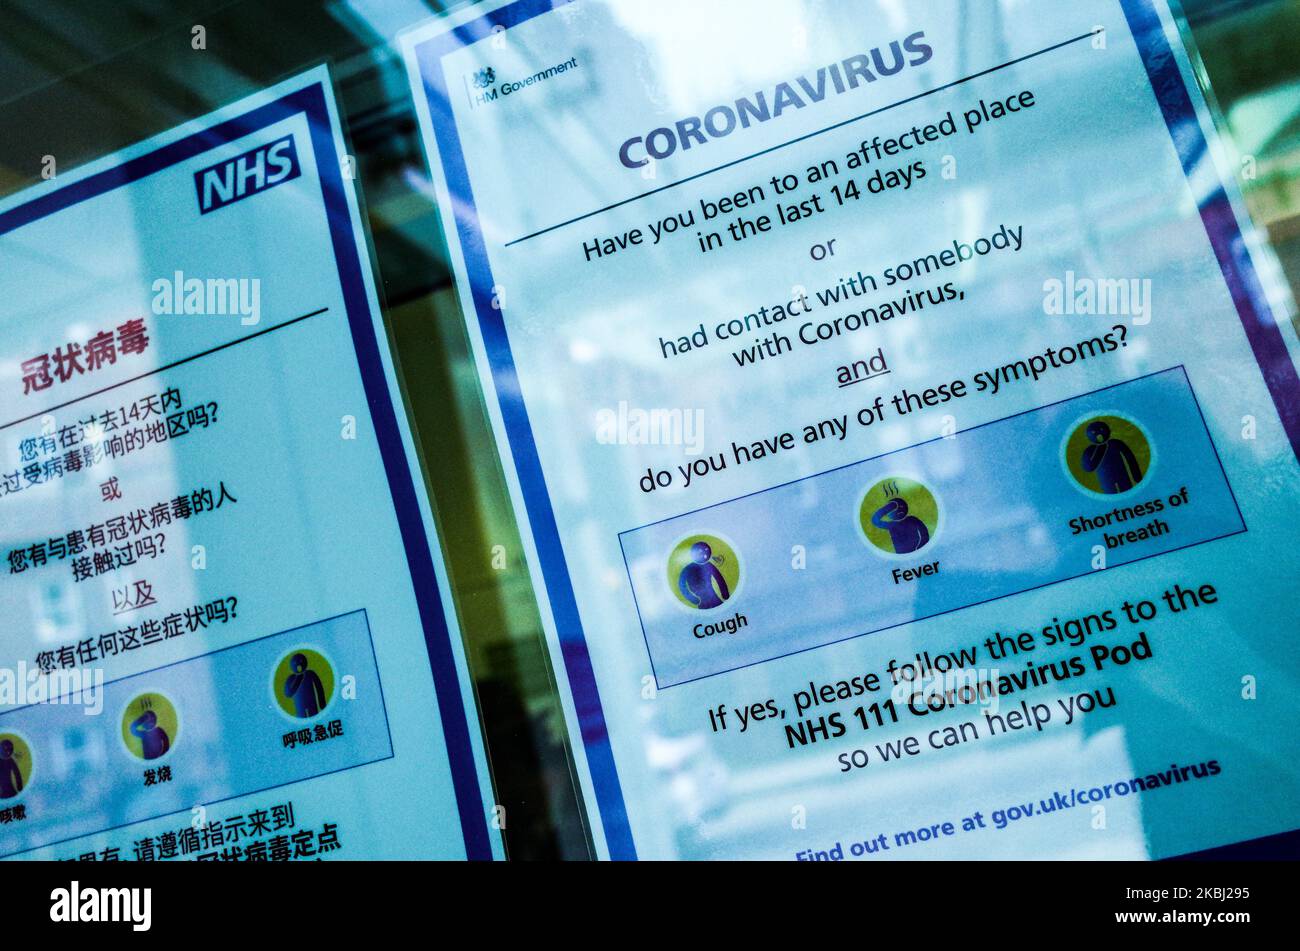 Les panneaux offrent des conseils sur le coronavirus covid-19 dans une fenêtre à l'entrée de l'hôpital universitaire, qui abrite une unité d'isolement de type « coronavirus pod », à Londres, en Angleterre, sur 27 février 2020. Le risque de pandémie du virus continue de s'inquiéter, les cas étant maintenant confirmés dans un nombre croissant de pays à travers le monde. Deux autres cas de coronavirus ont été confirmés aujourd'hui au Royaume-Uni, portant le total à 15. (Photo de David Cliff/NurPhoto) Banque D'Images